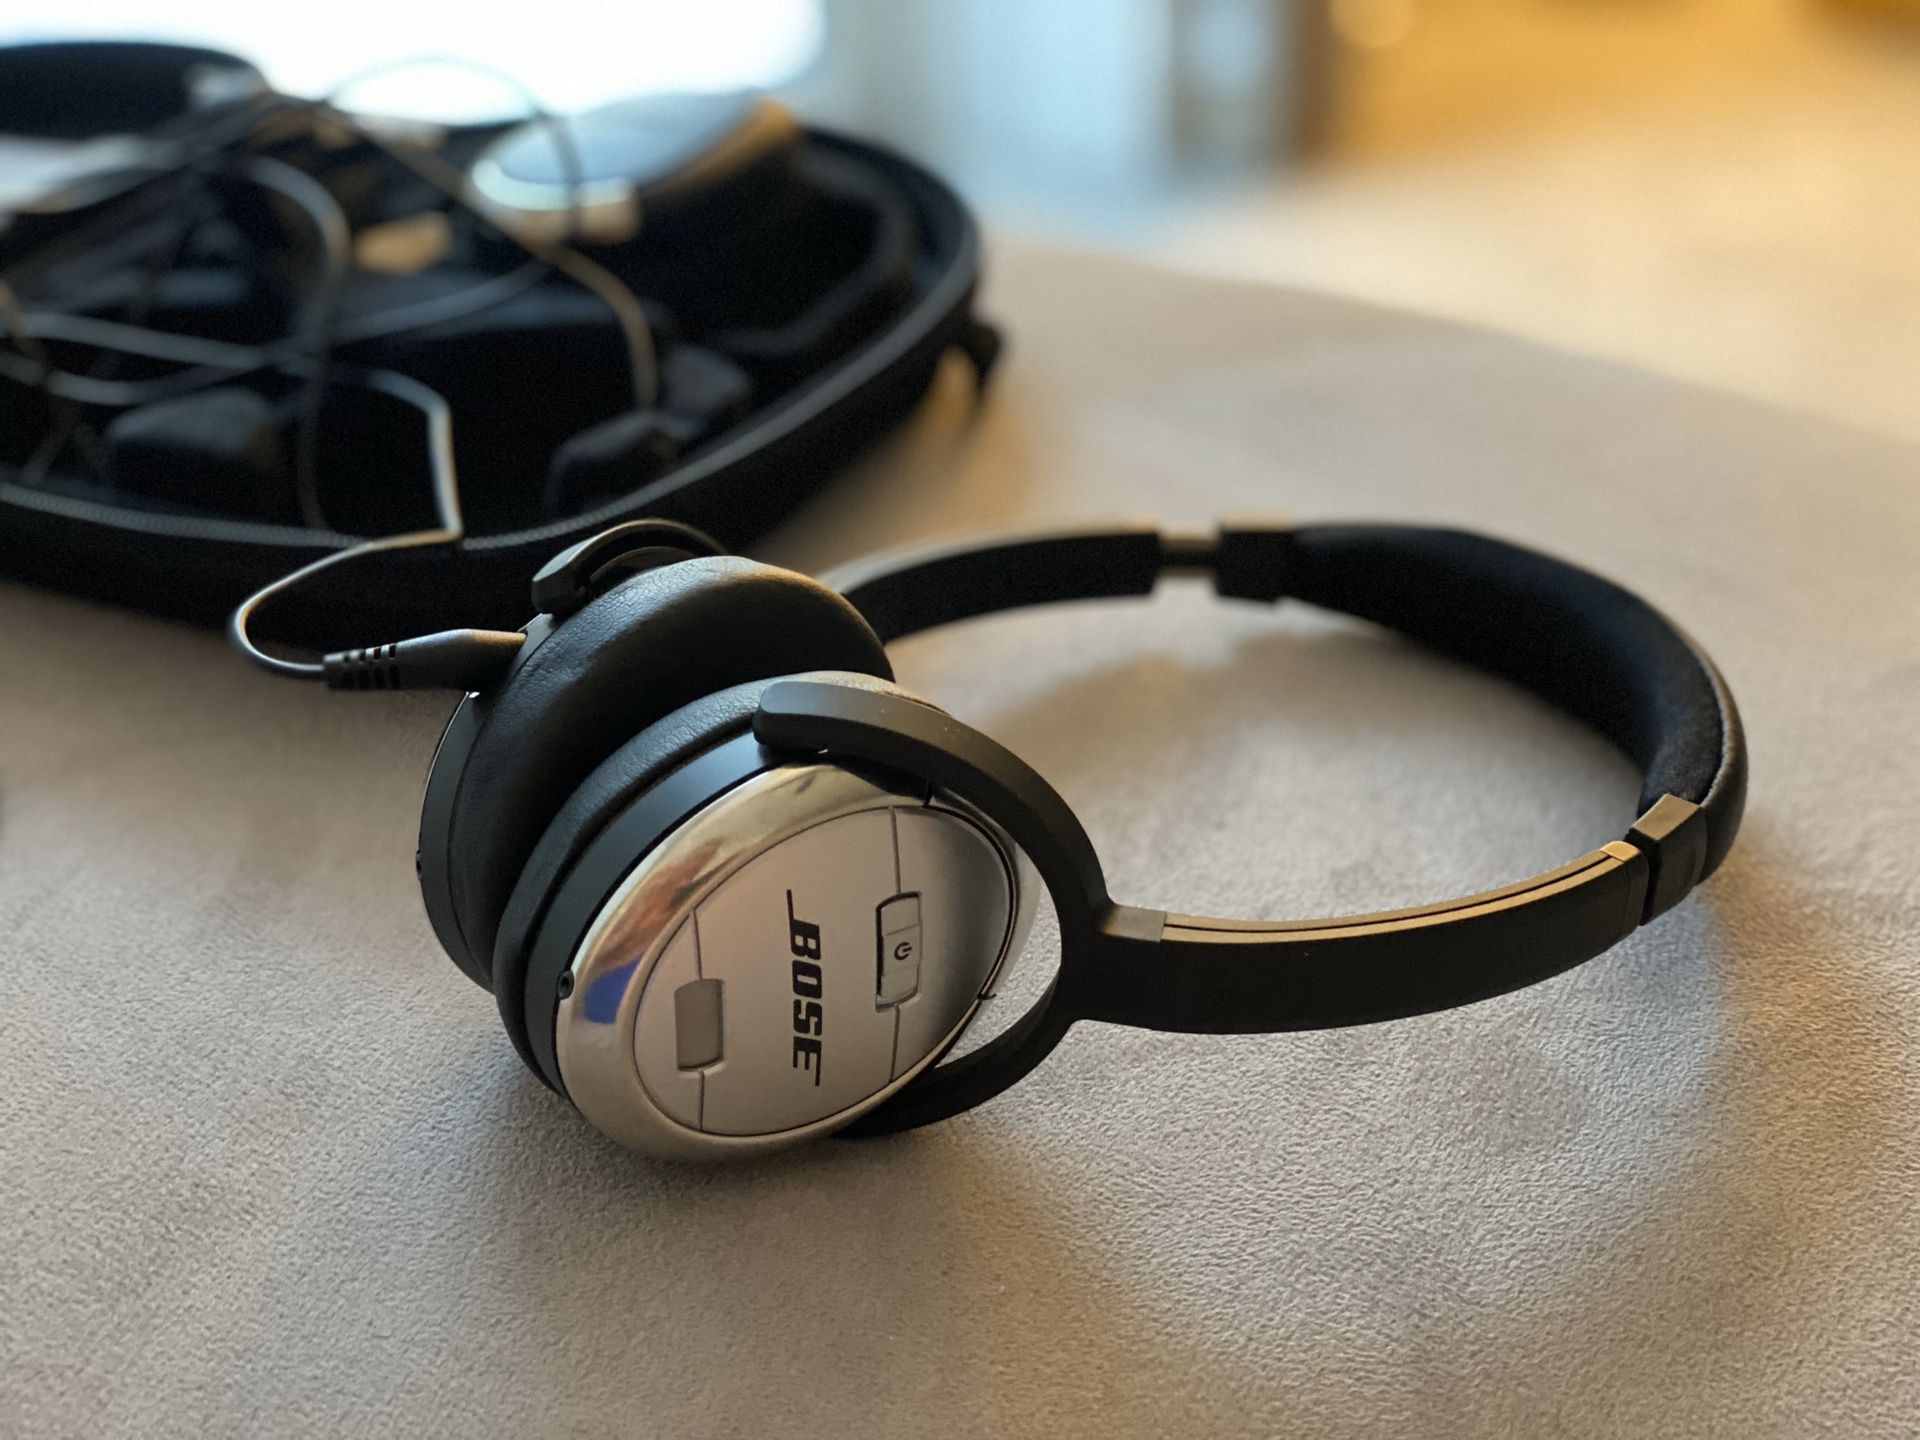 Bose Quiet Comfort 3 headphones